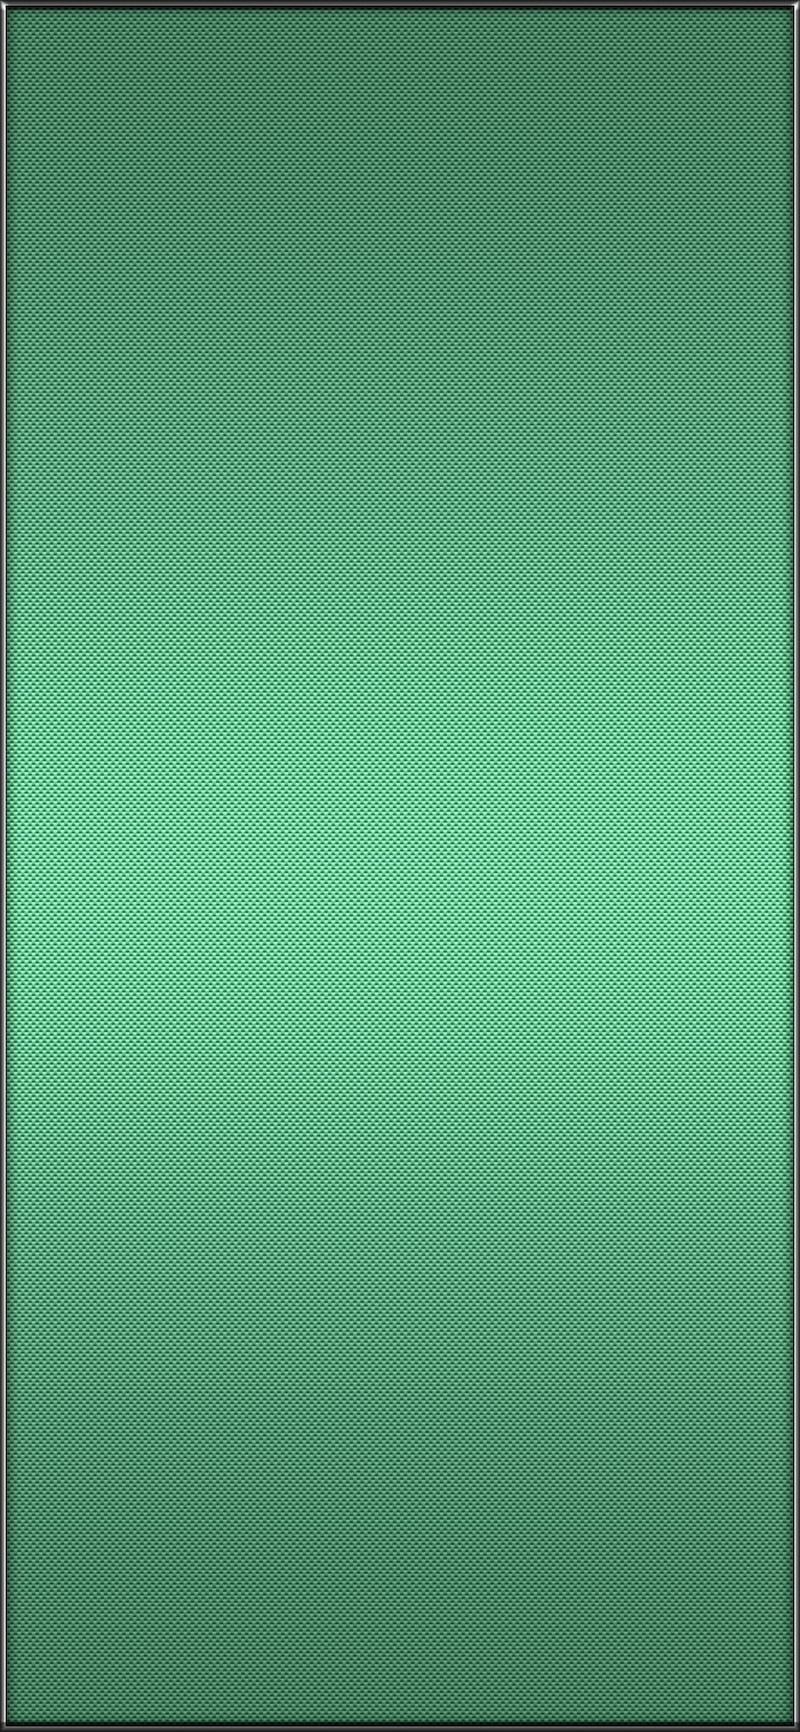 Green Wallpapers Free HD Download 500 HQ  Unsplash